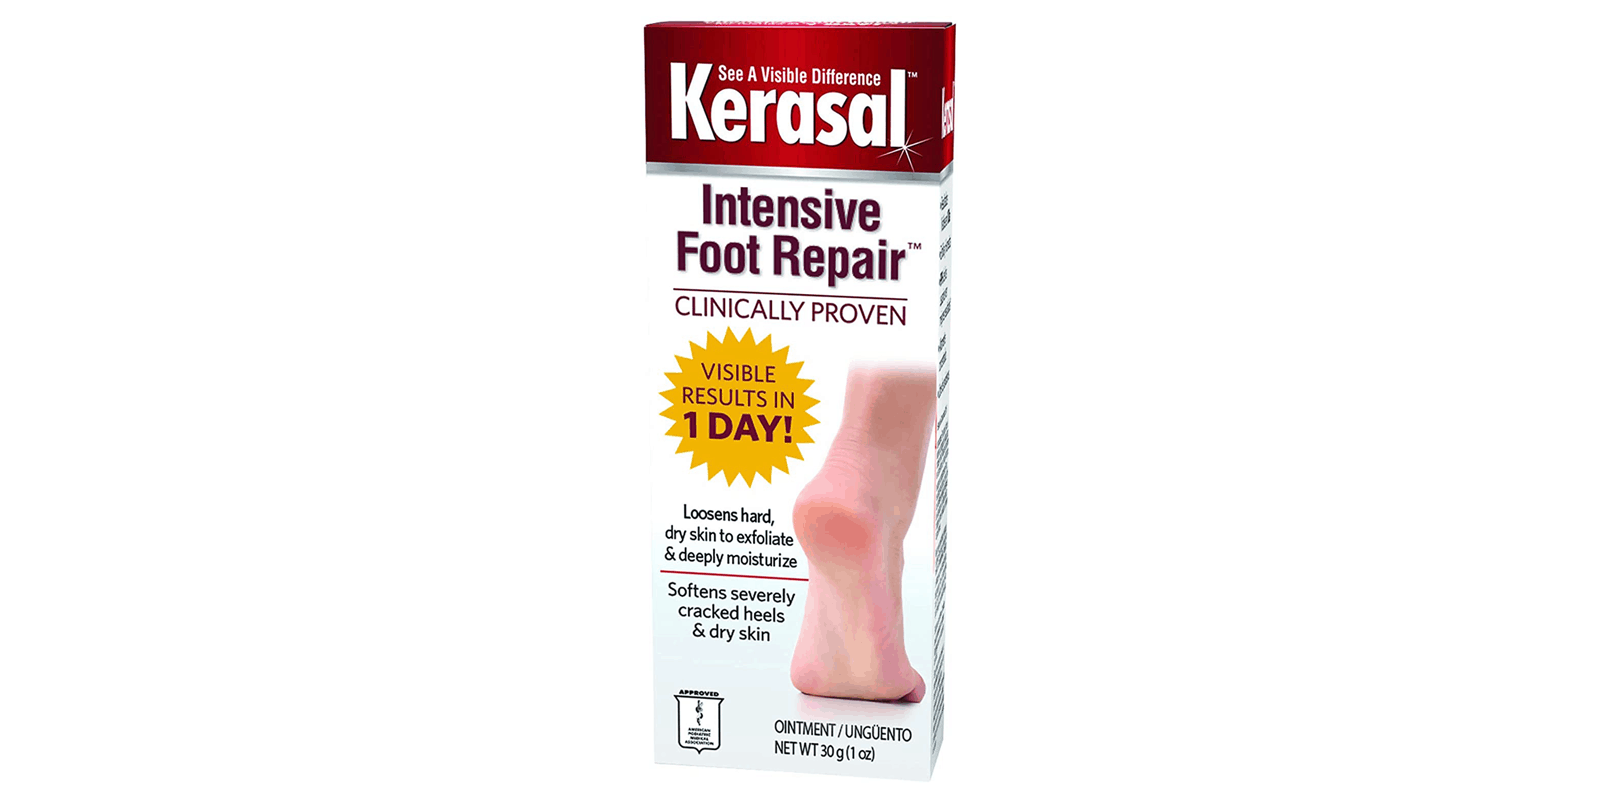 Kerasal-intensive-foot-repair-reviews